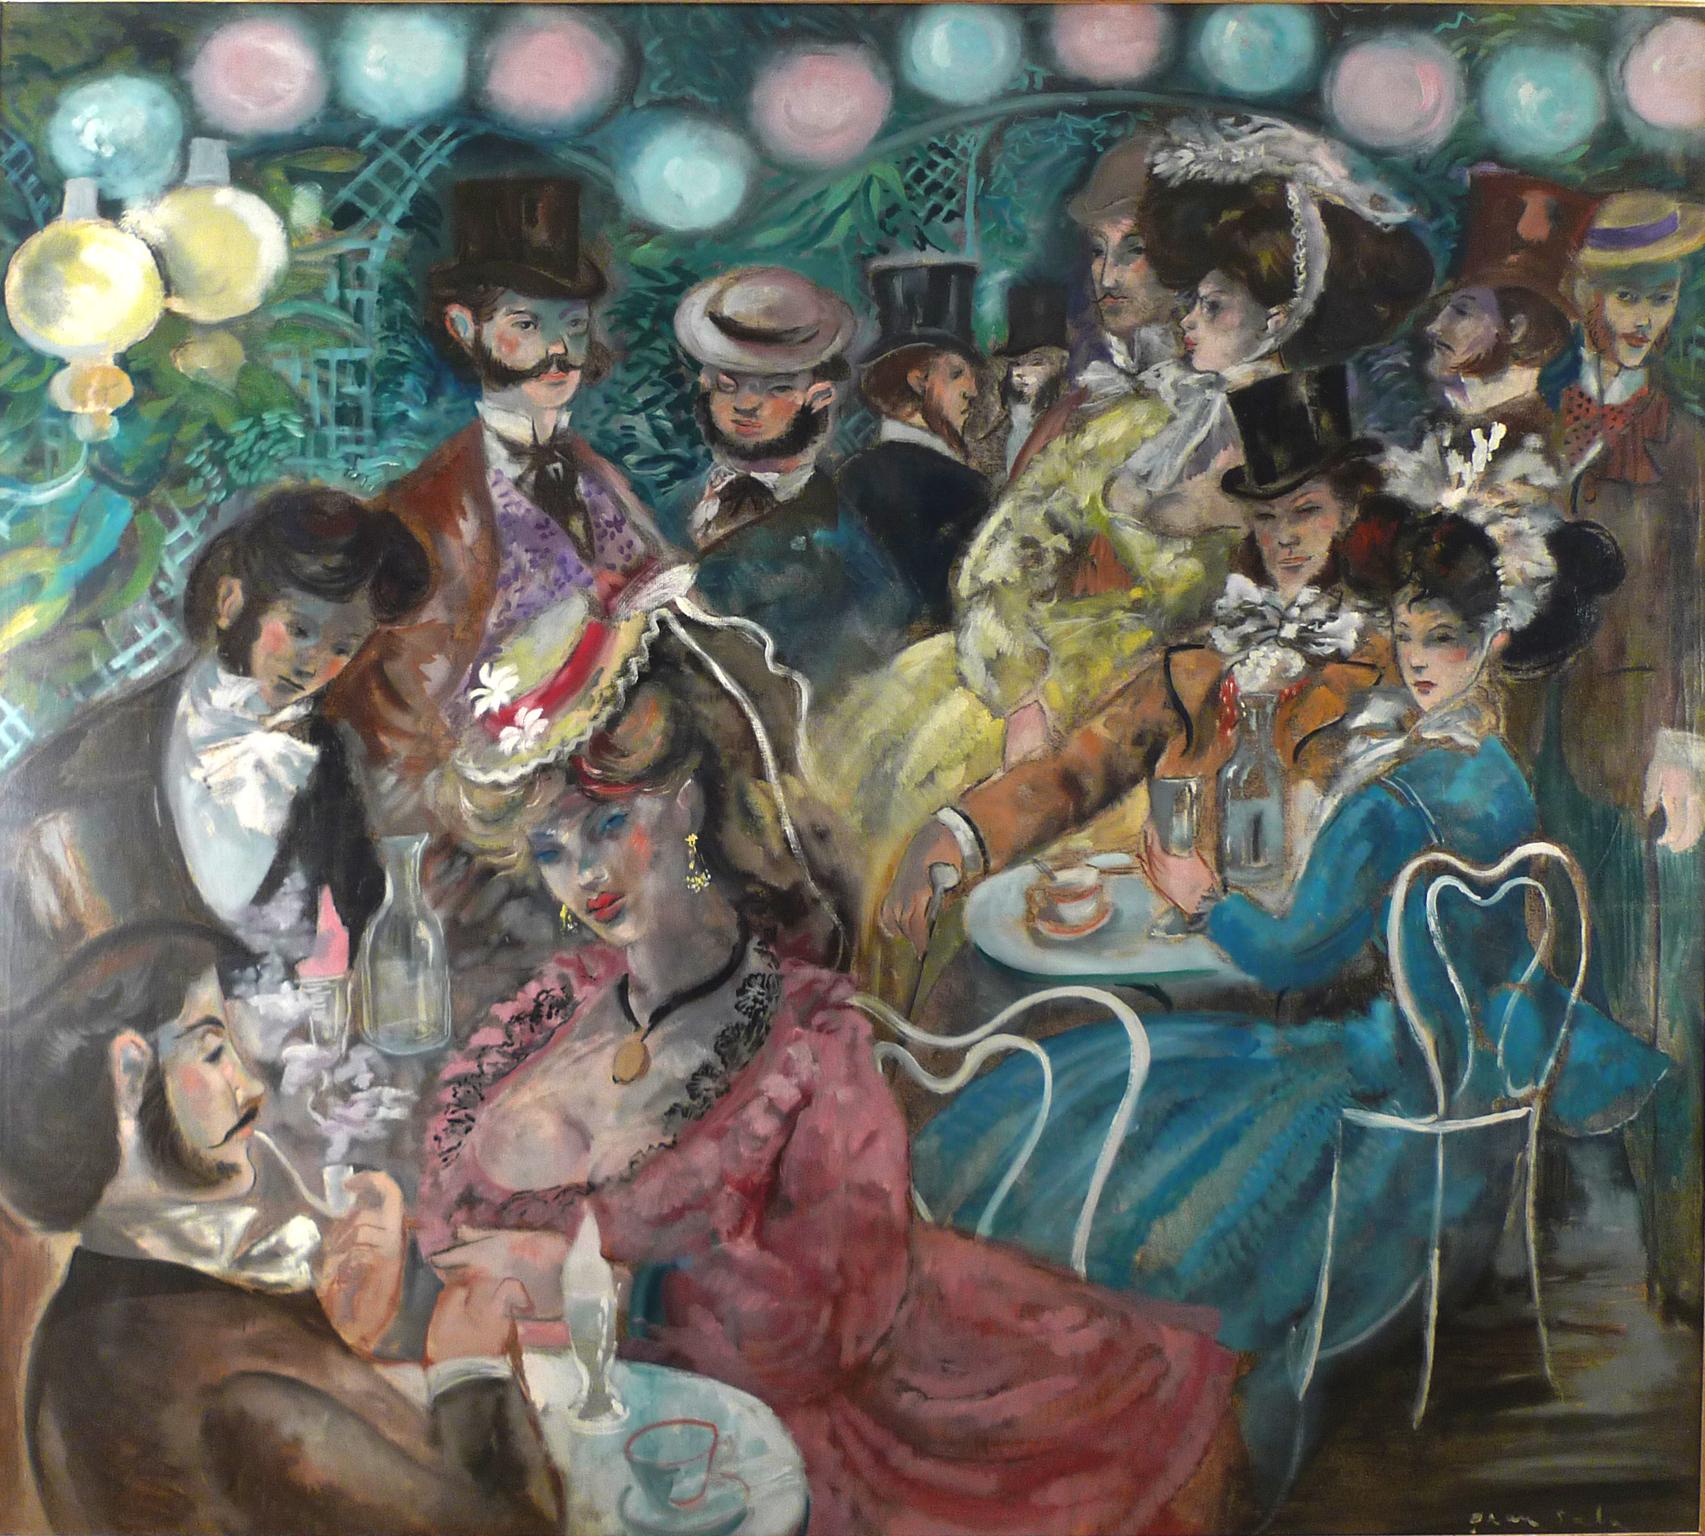 "Le Moulin de la Galette", Large 20th Century oil on canvas by Emilio Grau Sala